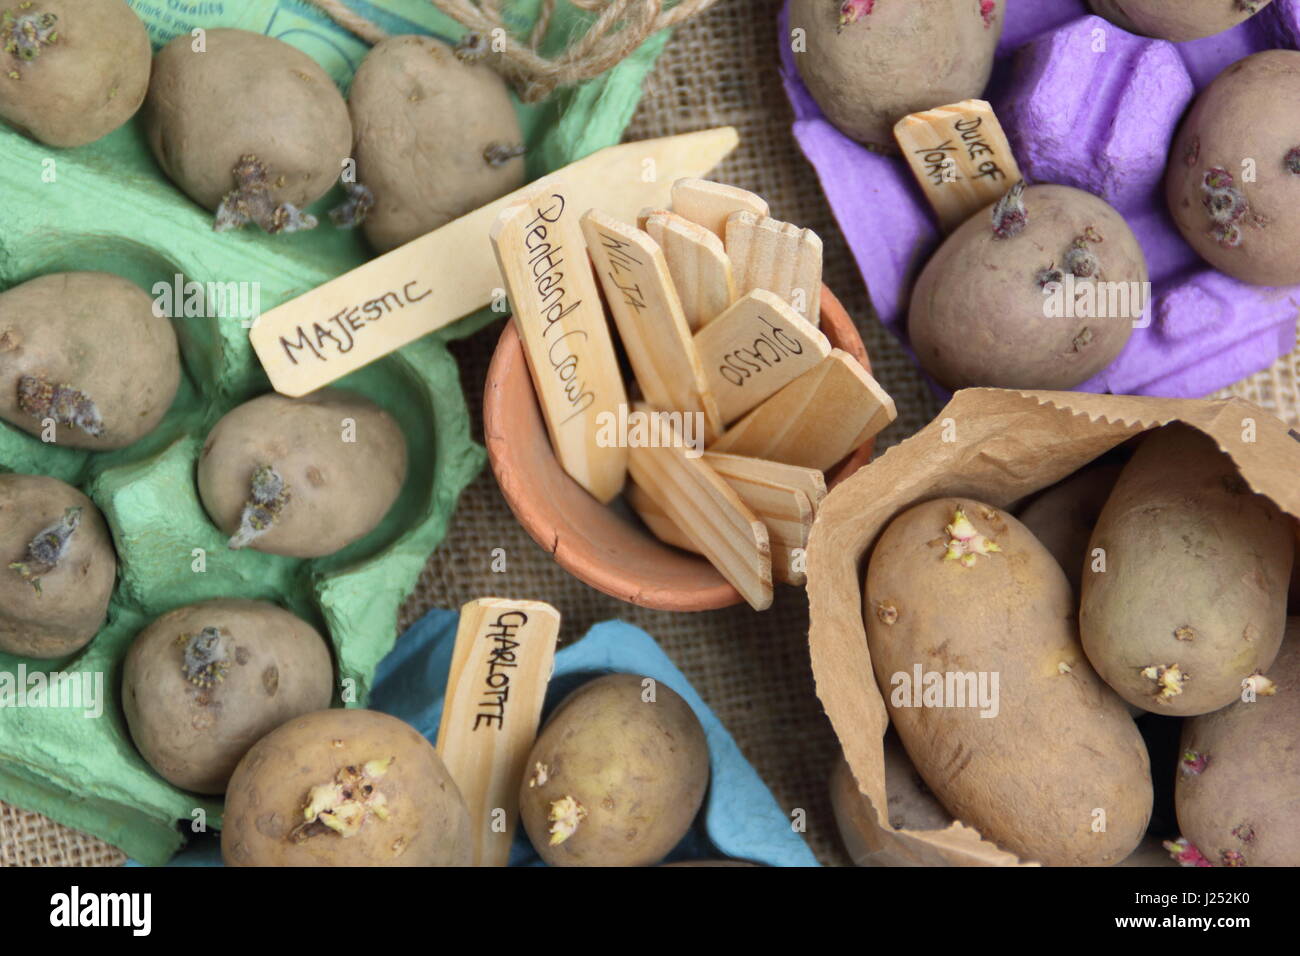 Labelleing sementi di varietà di patata chitting in scatola per uova al coperto per incoraggiare i germogli di forte prima di piantare fuori in giardino patch vegetale Foto Stock